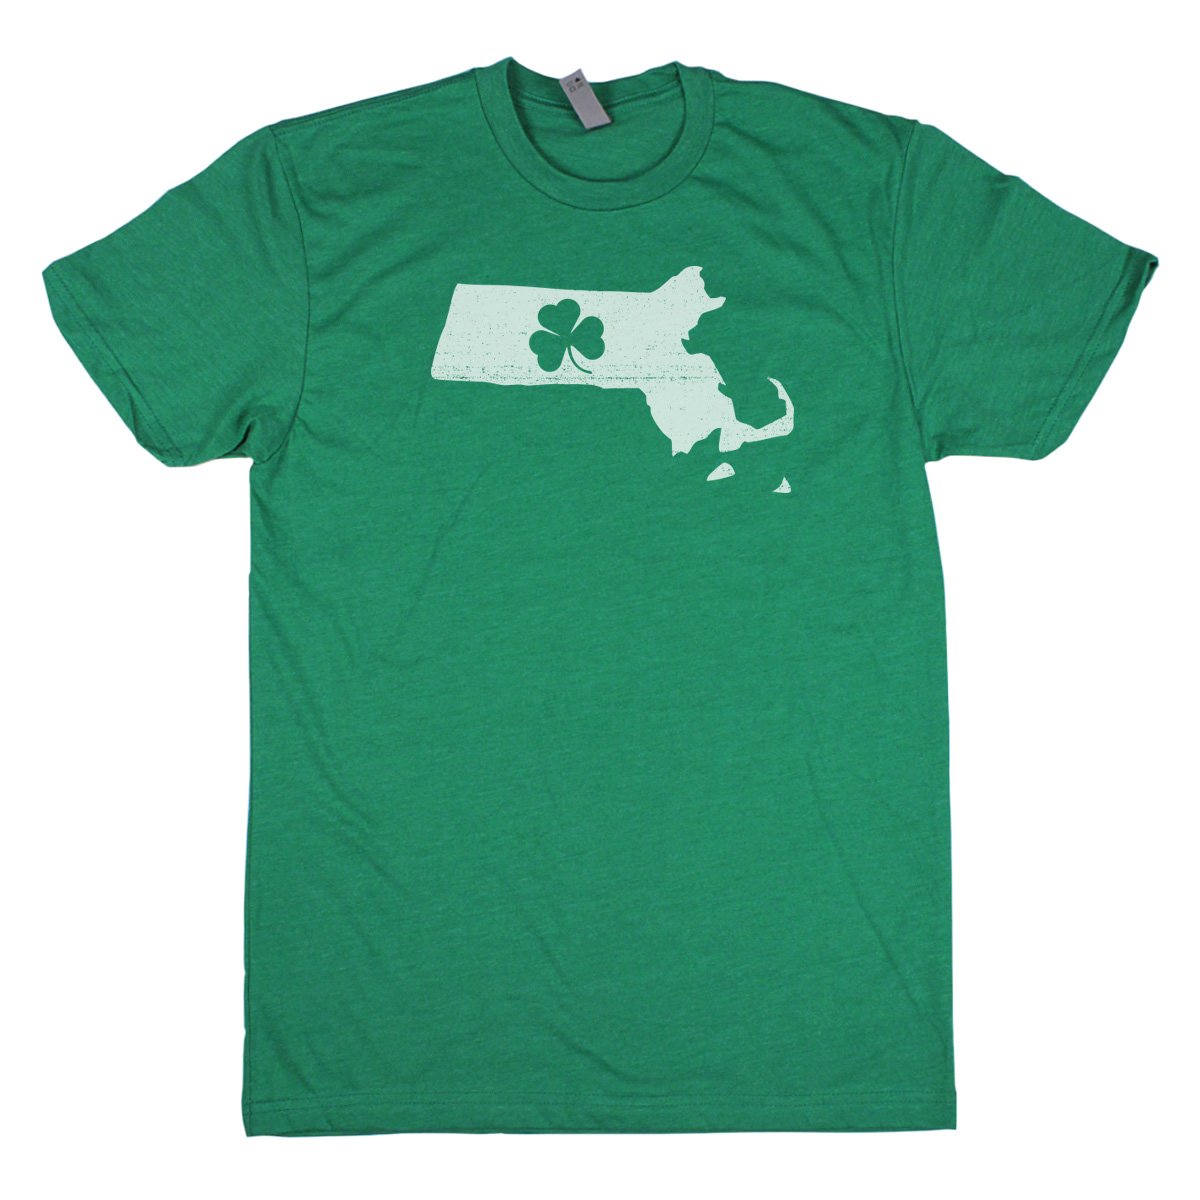 Shamrock Men's Unisex T-Shirt - Michigan